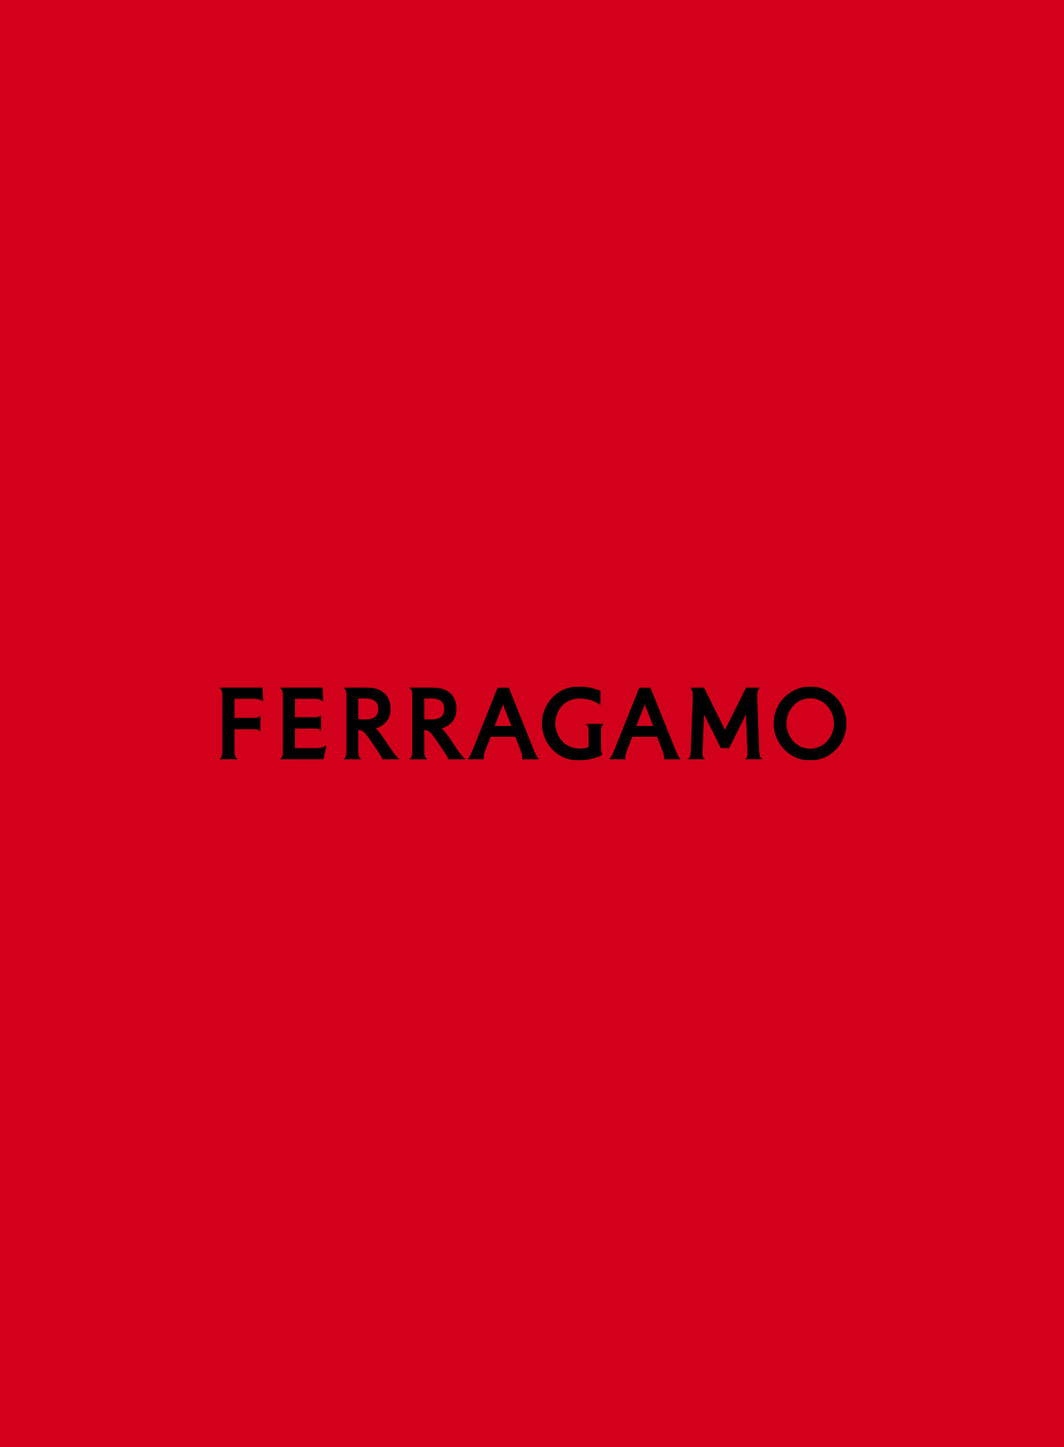 Ferragamo annonce une croissance de 17% de ses recettes sur les neuf premiers mois 2022.